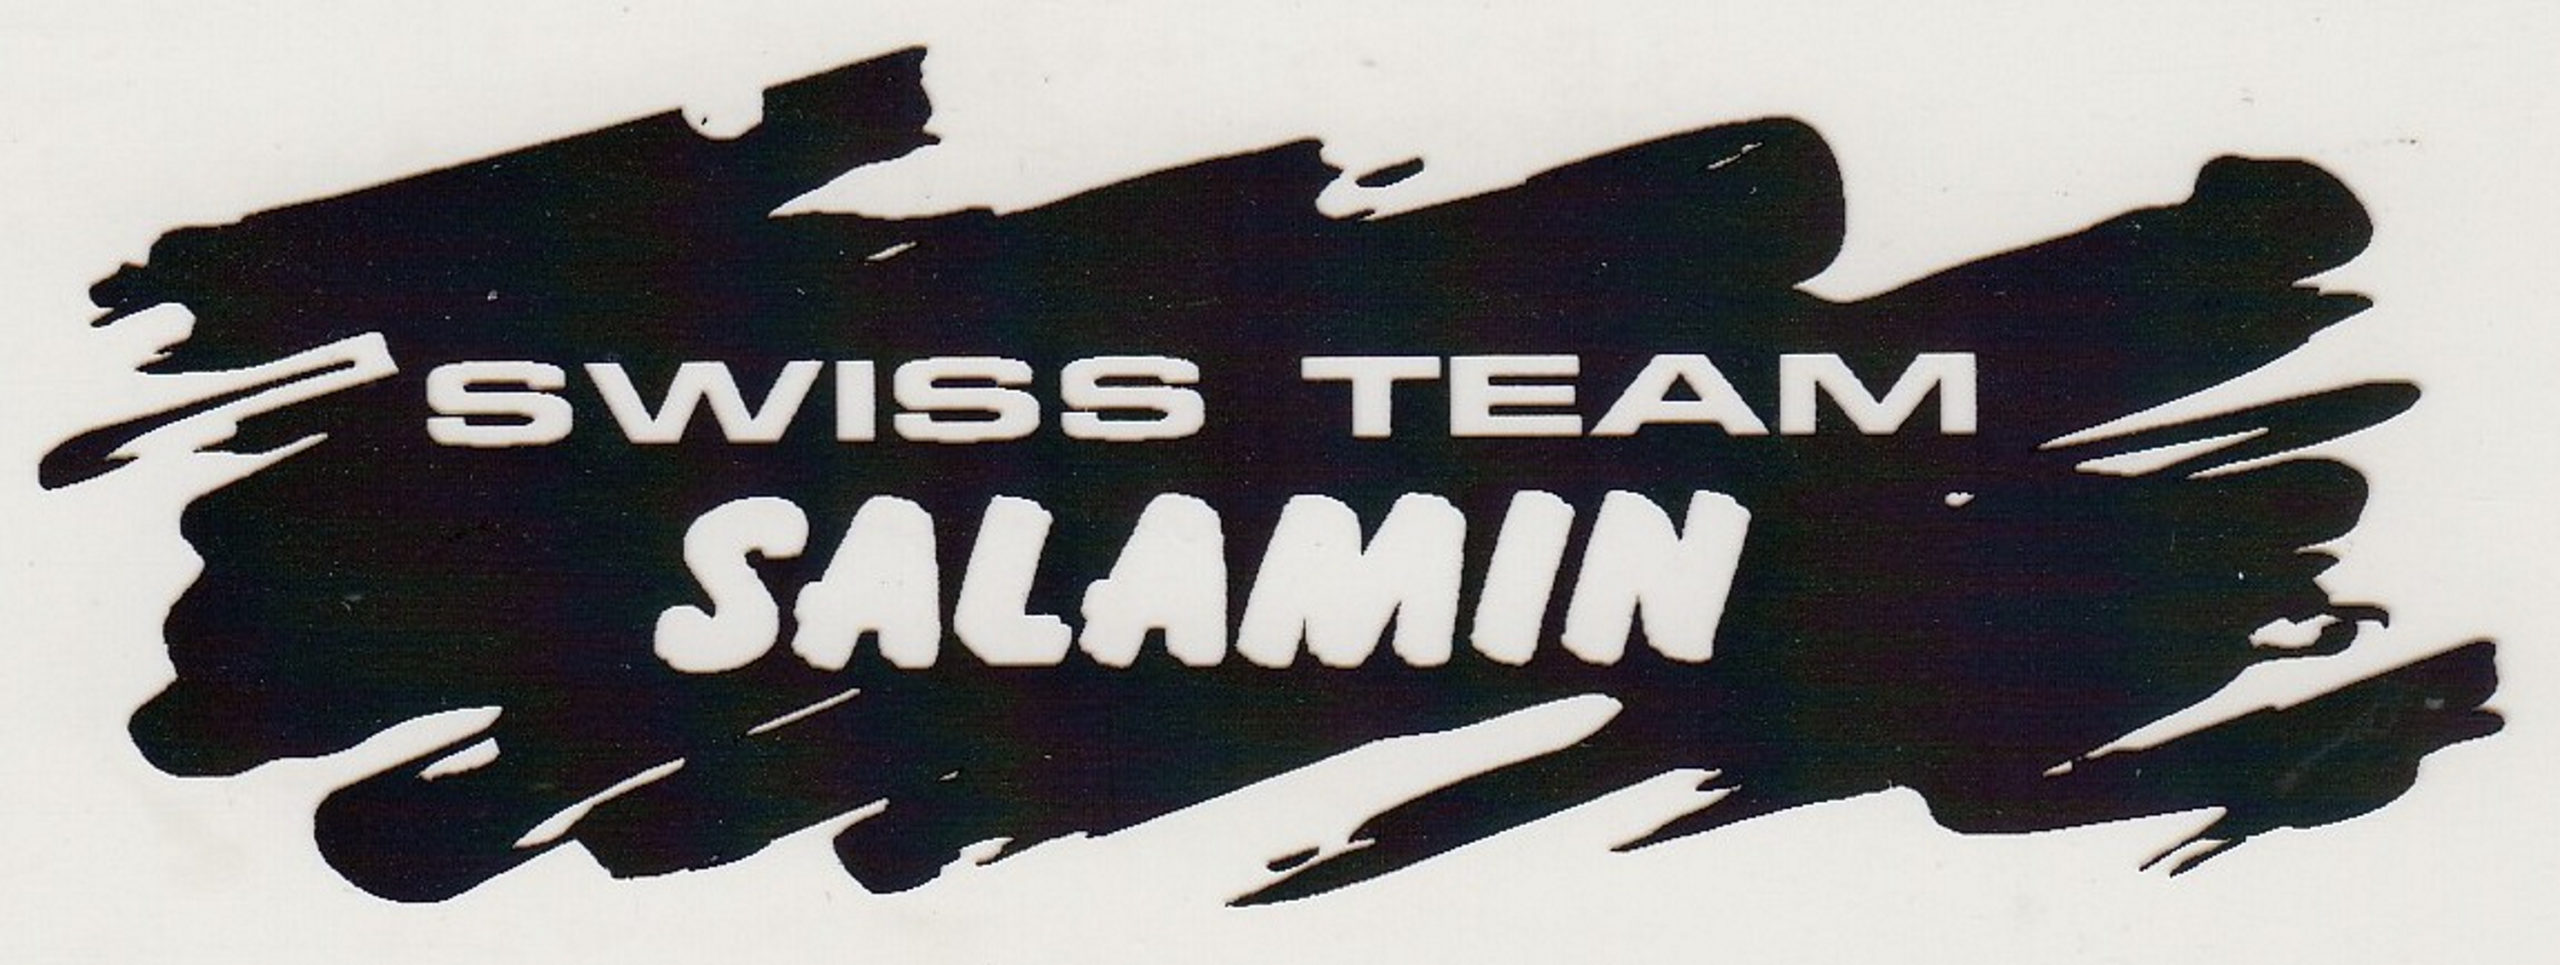 Swiss Team Salamin